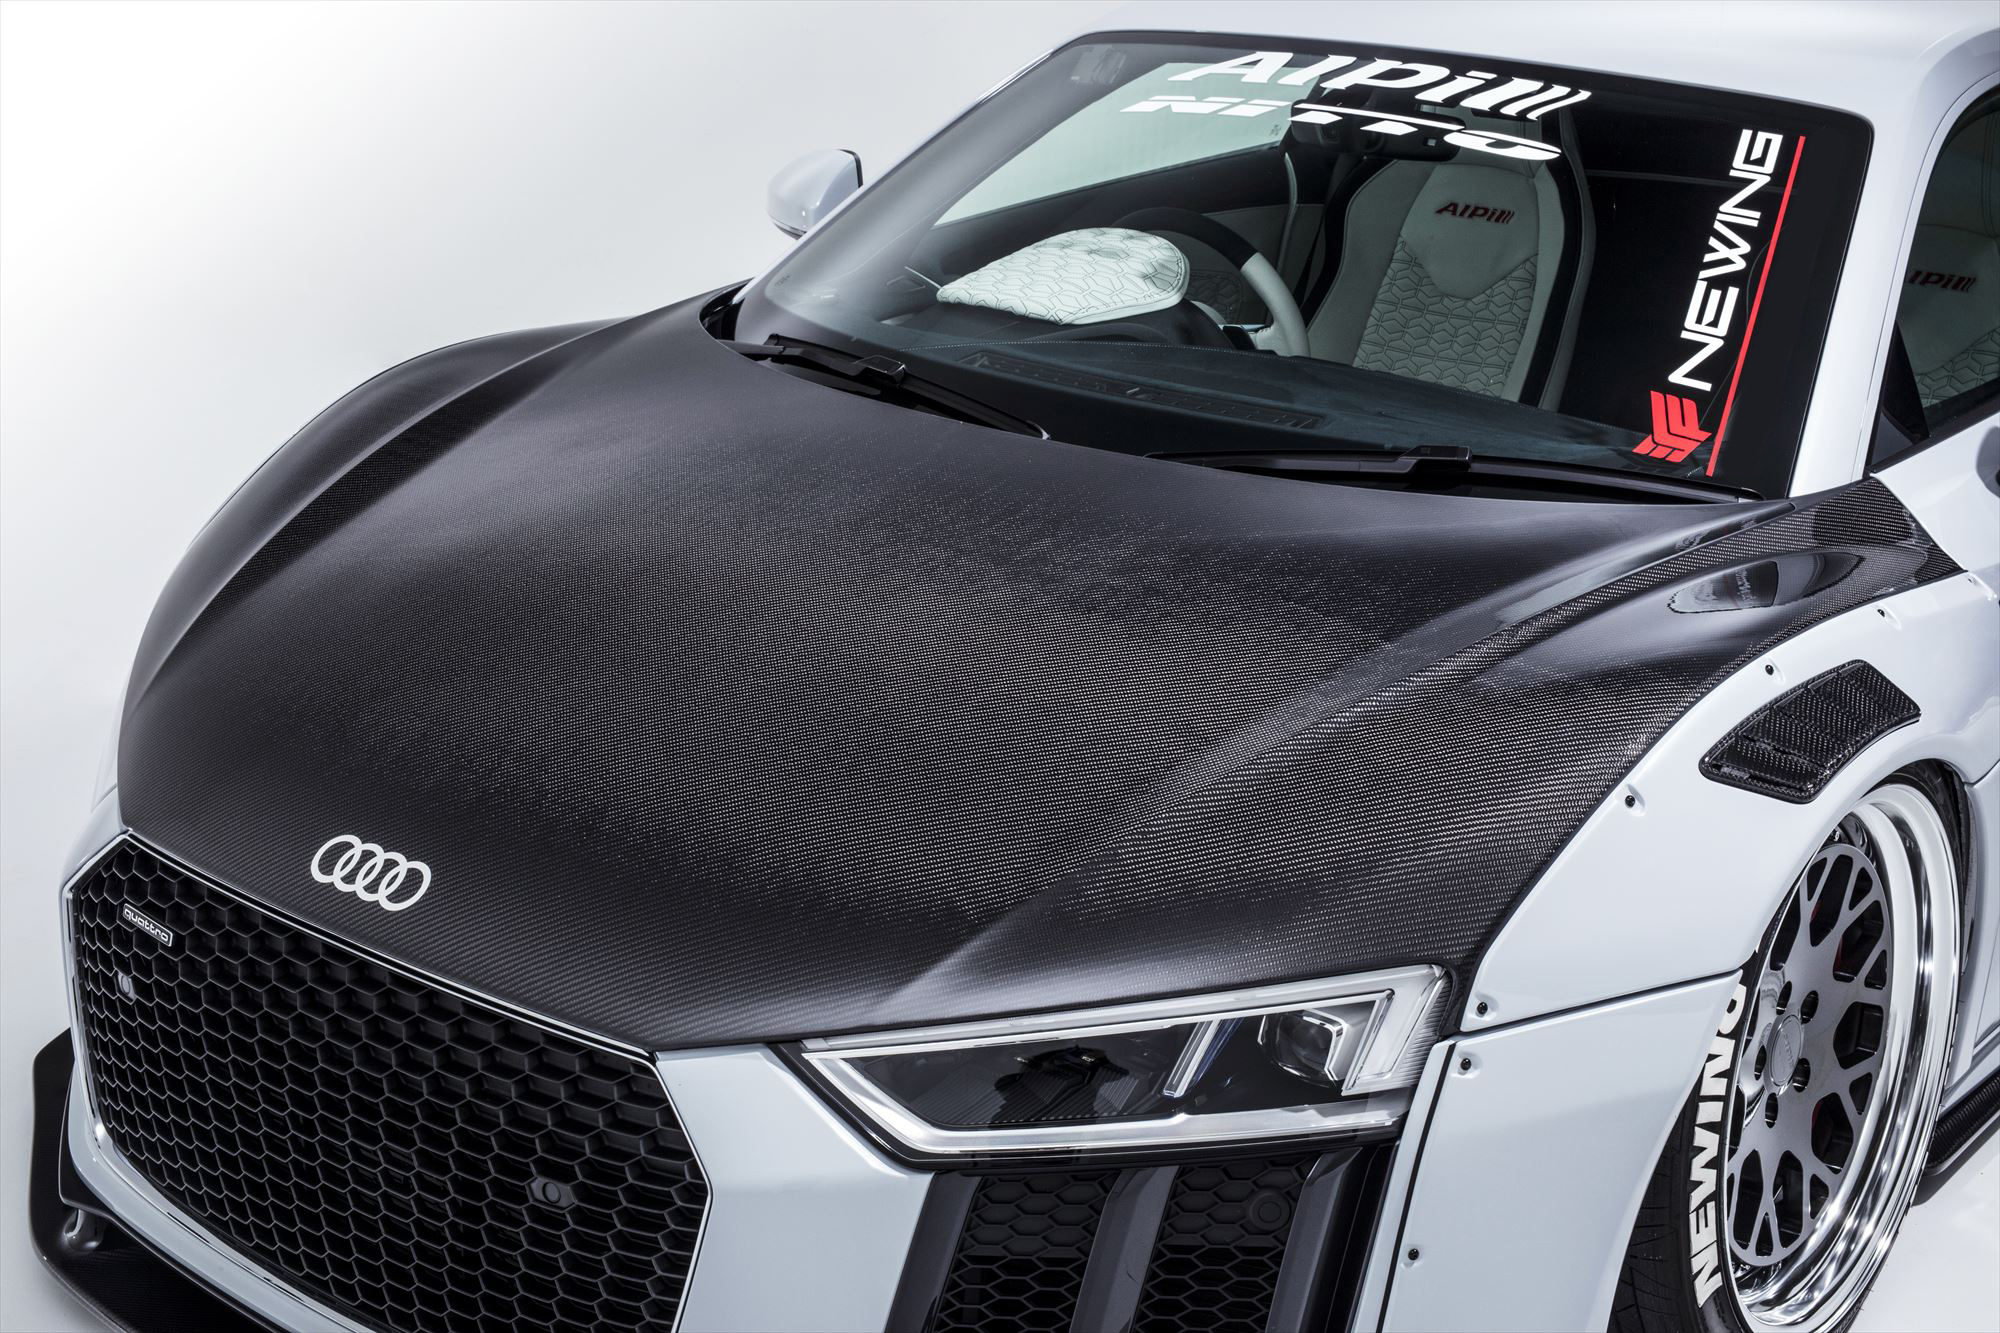 NEWING Bodi Kit for Audi R8-RSR Alpil carbon fiber